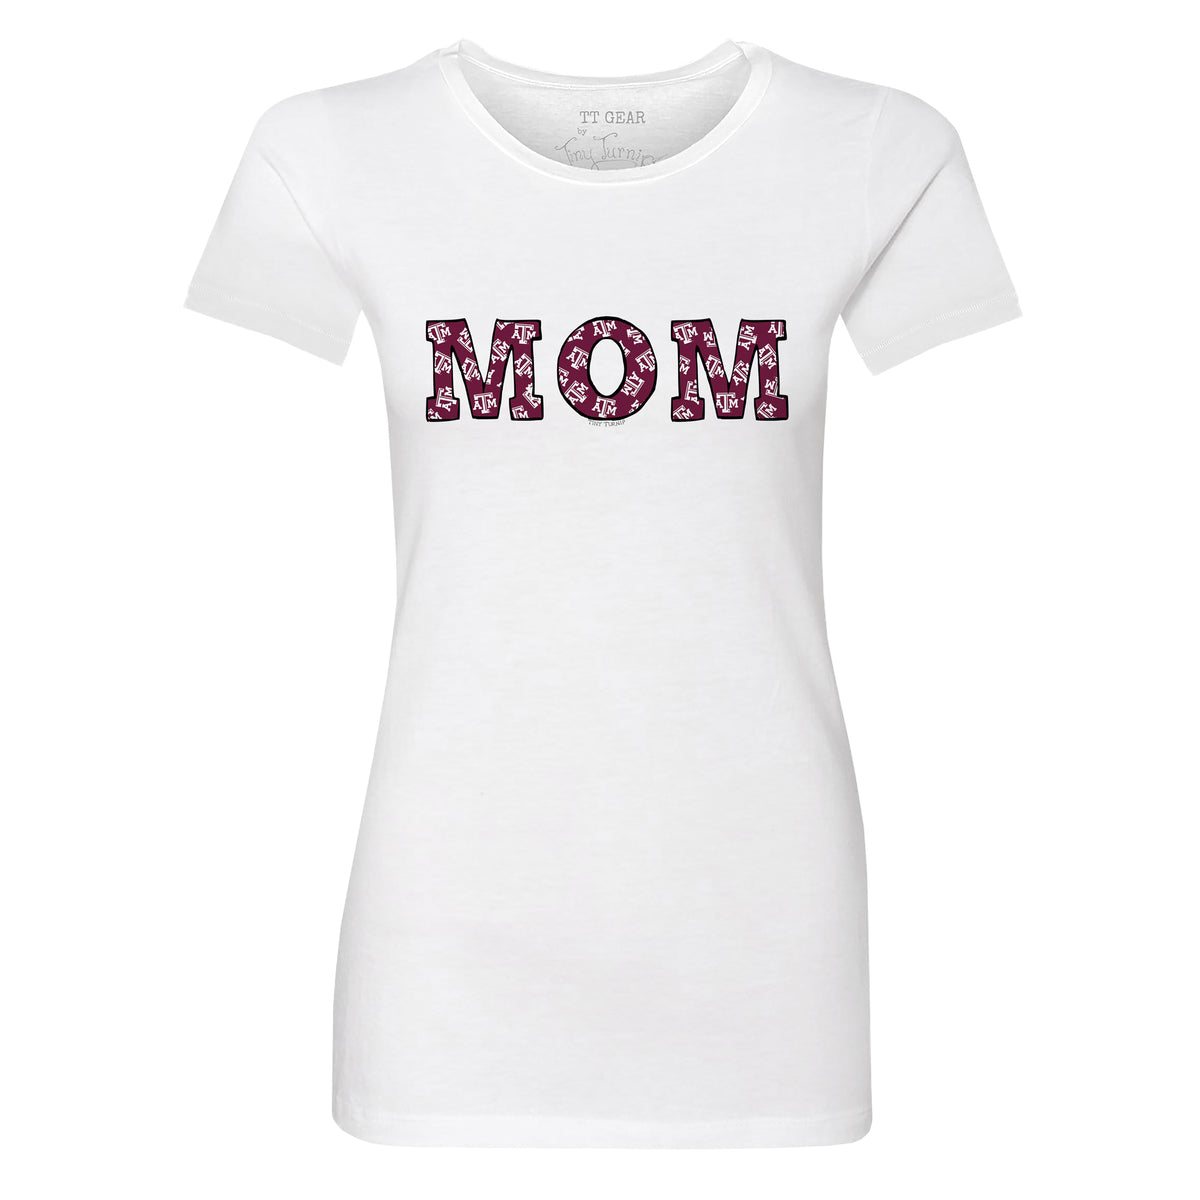 Texas A&M Aggies Mom Tee Shirt